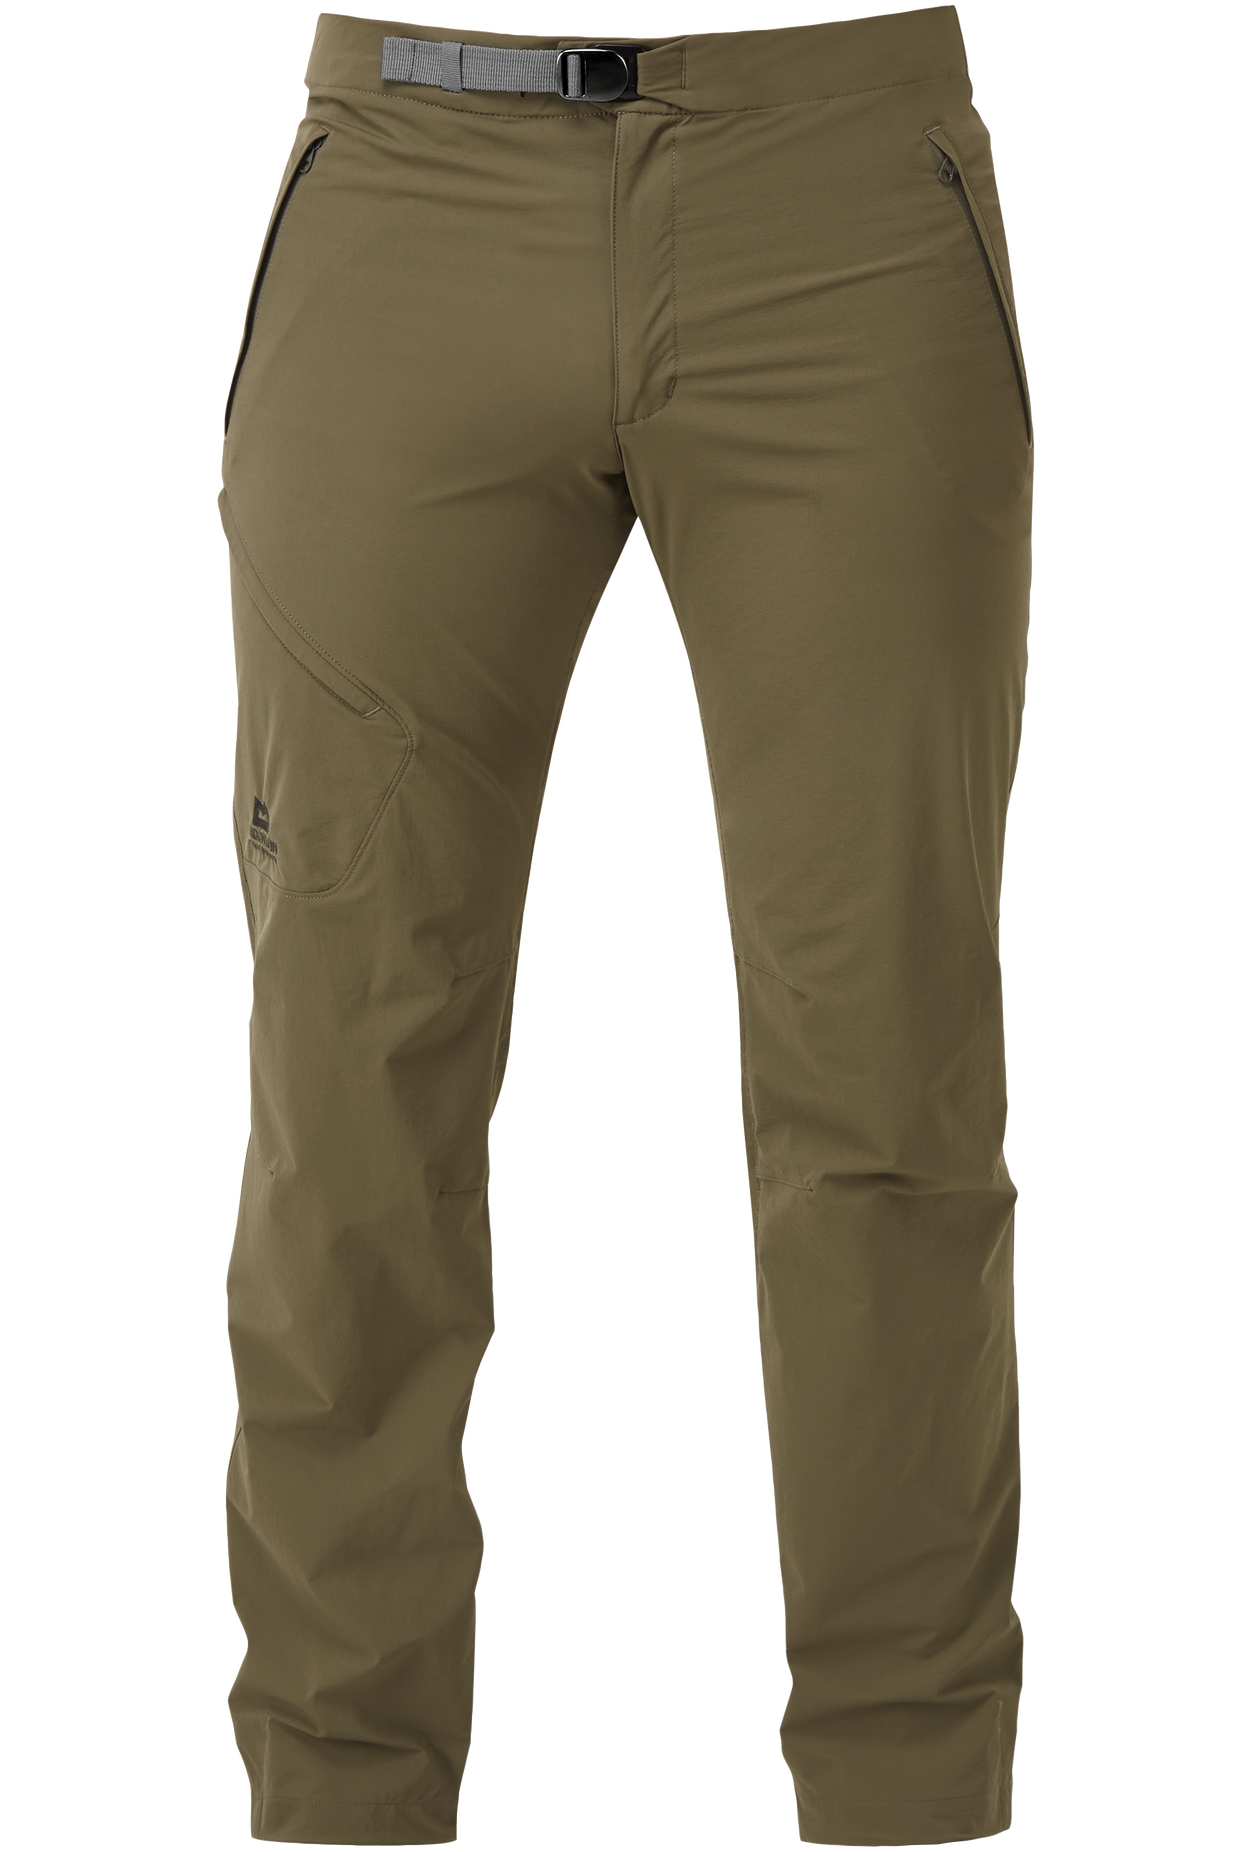 Mountain Equipment pánské softshellové kalhoty Comici Pant - prodloužené Barva: Mudstone, Velikost: 36/XL